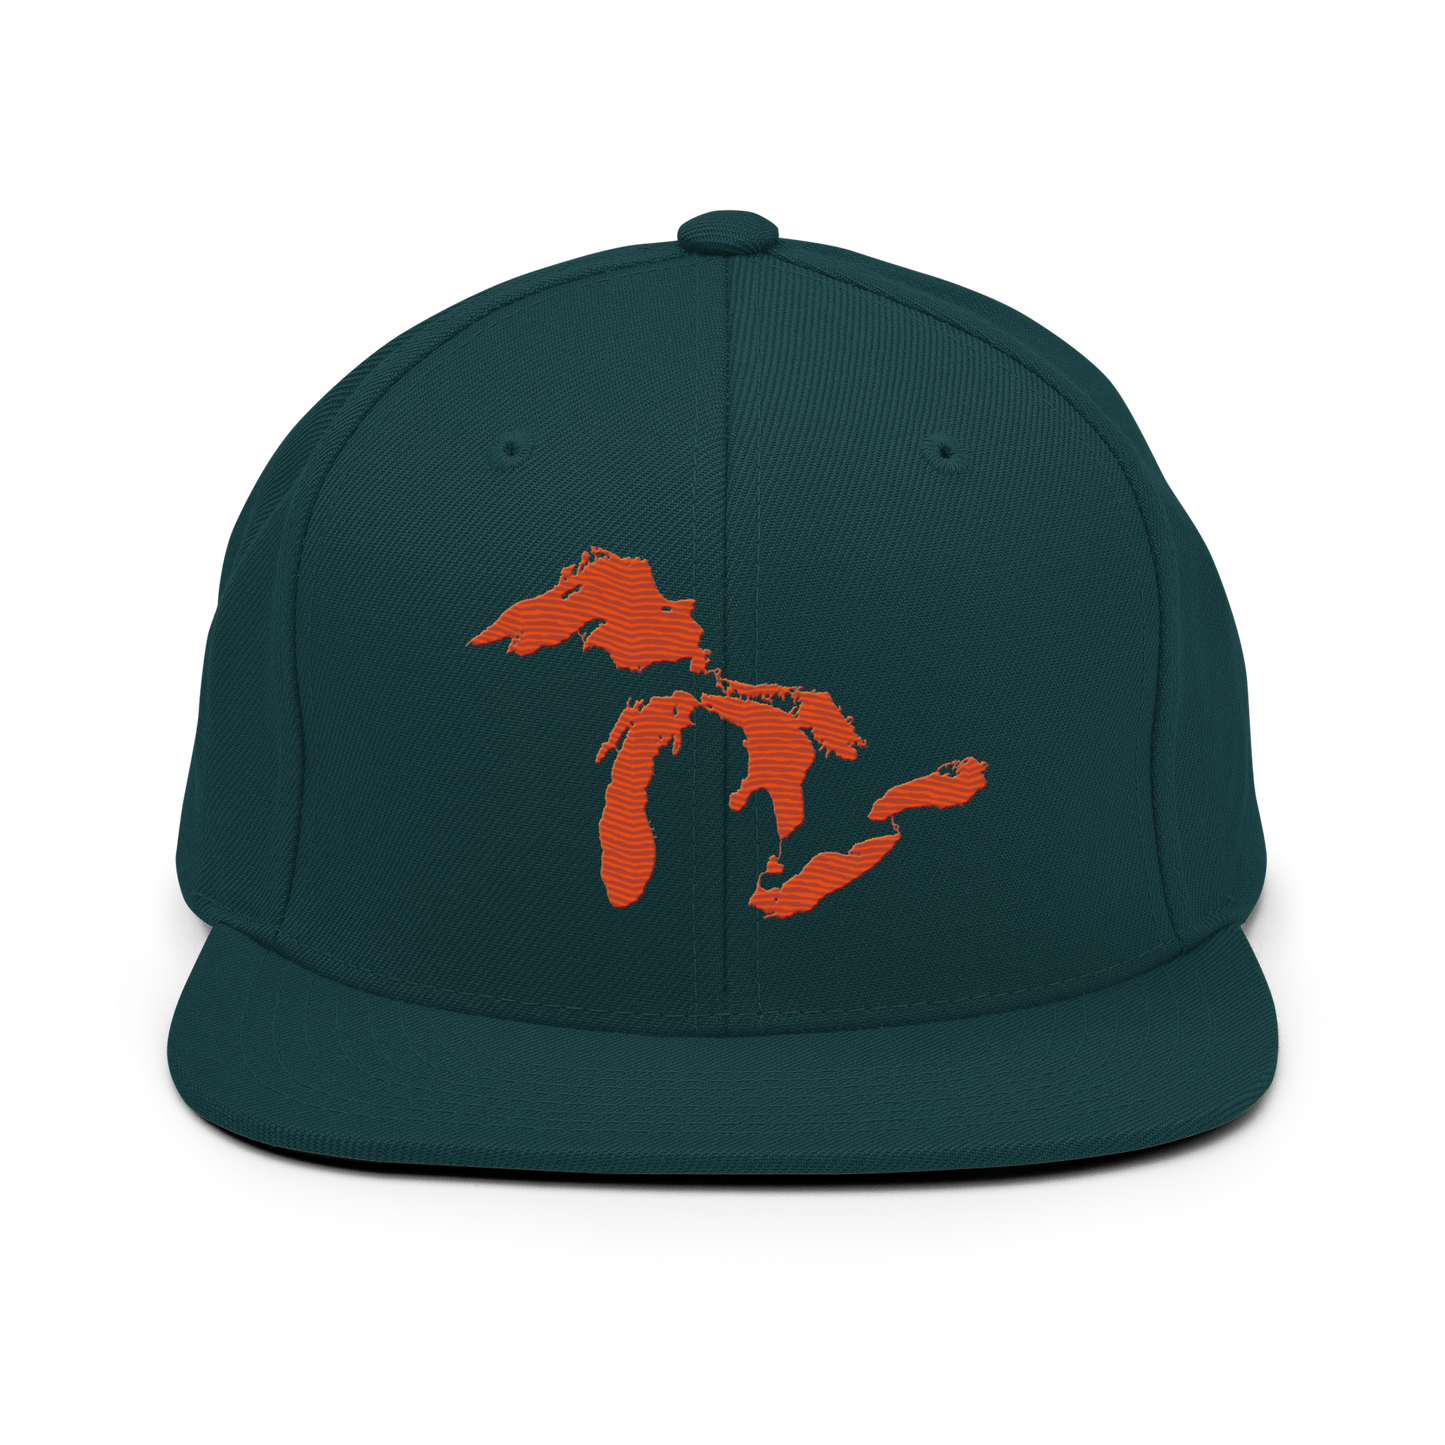 Great Lakes Vintage Snapback | Maple Leaf Orange